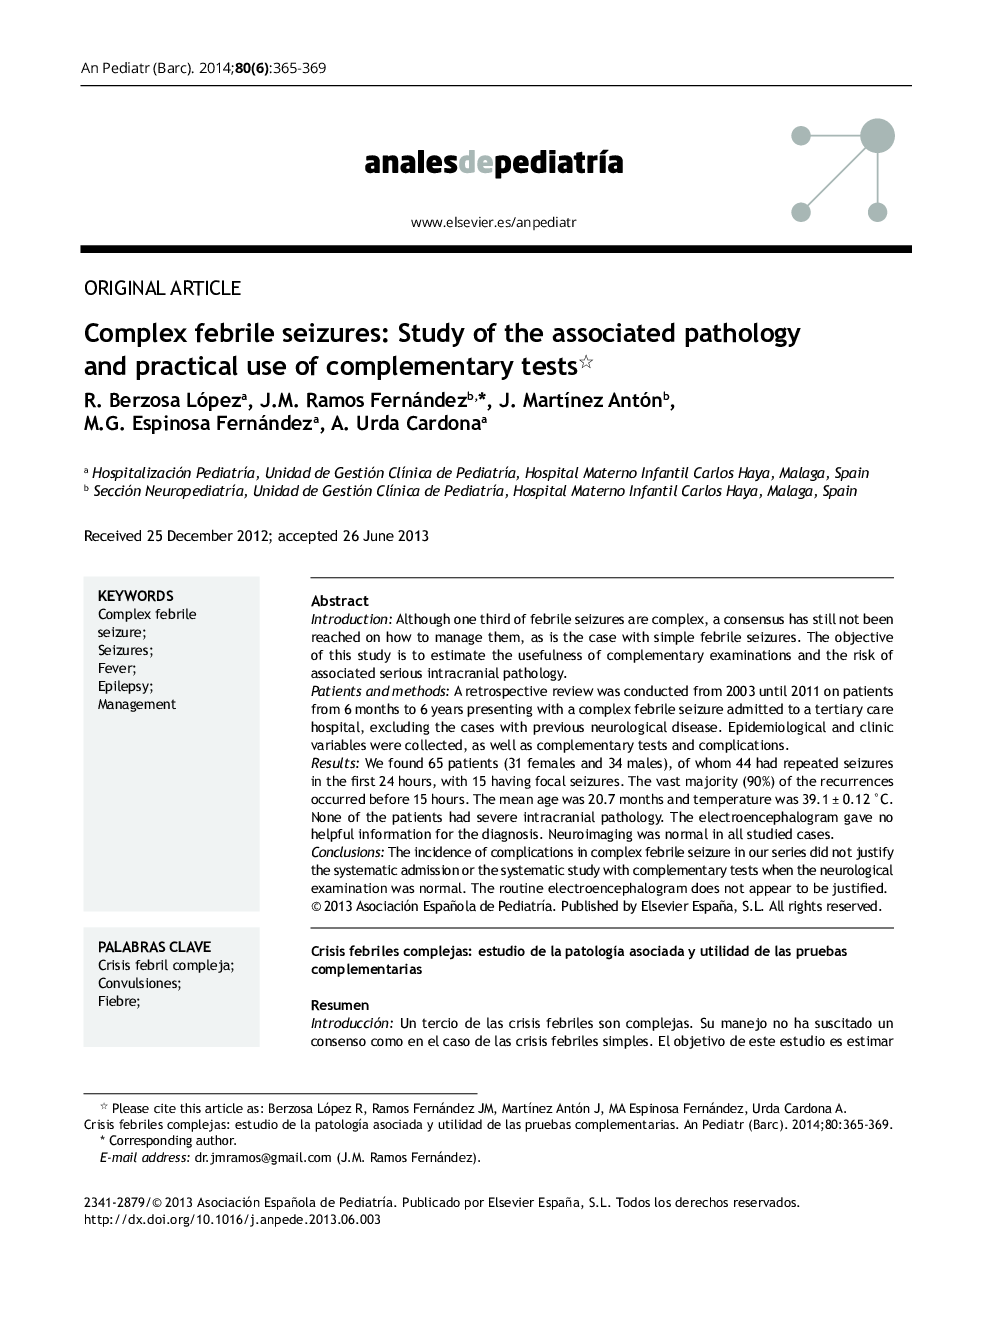 تشنجهای کمپلکس تب: مطالعه پاتولوژیک مرتبط و کاربرد عملی آزمایشهای مکمل 